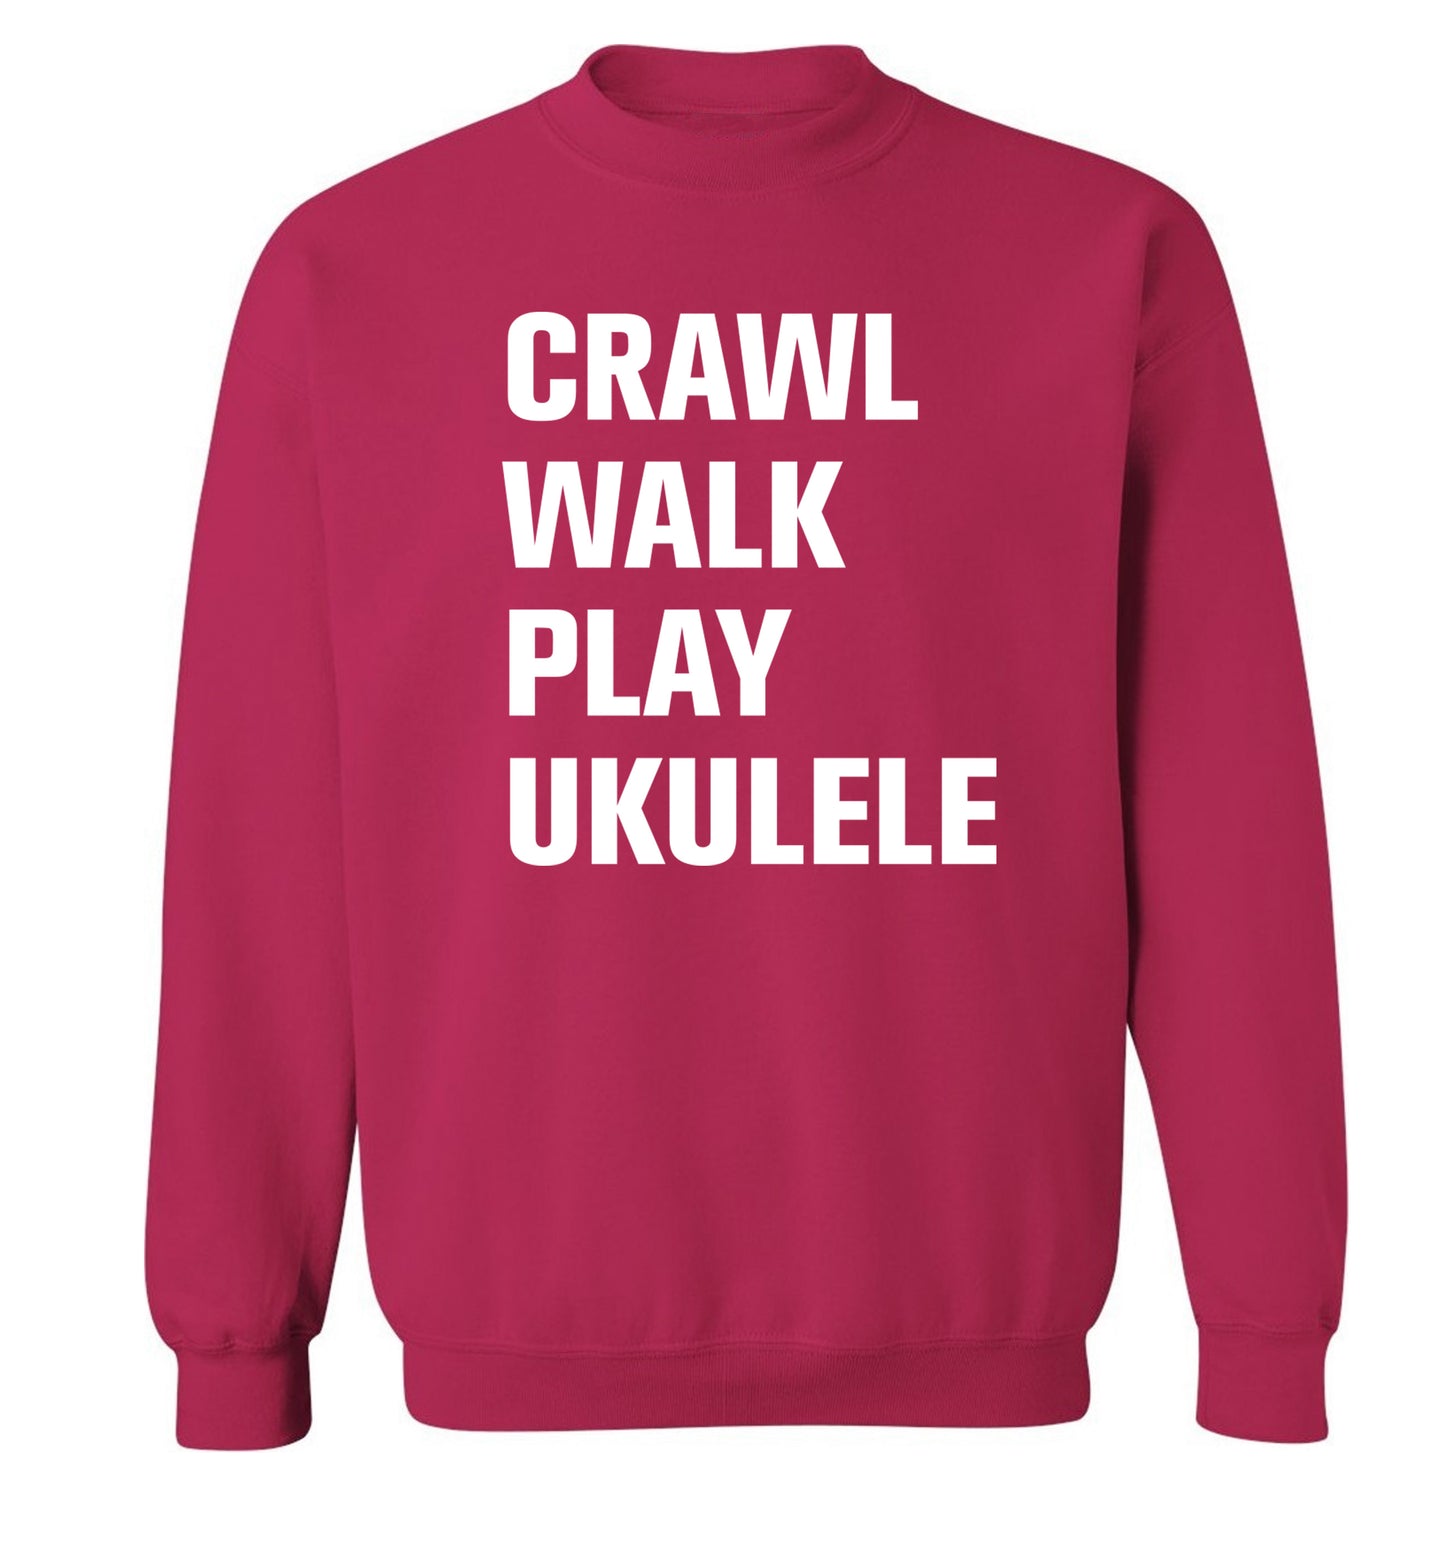 Crawl walk play ukulele Adult's unisex pink Sweater 2XL